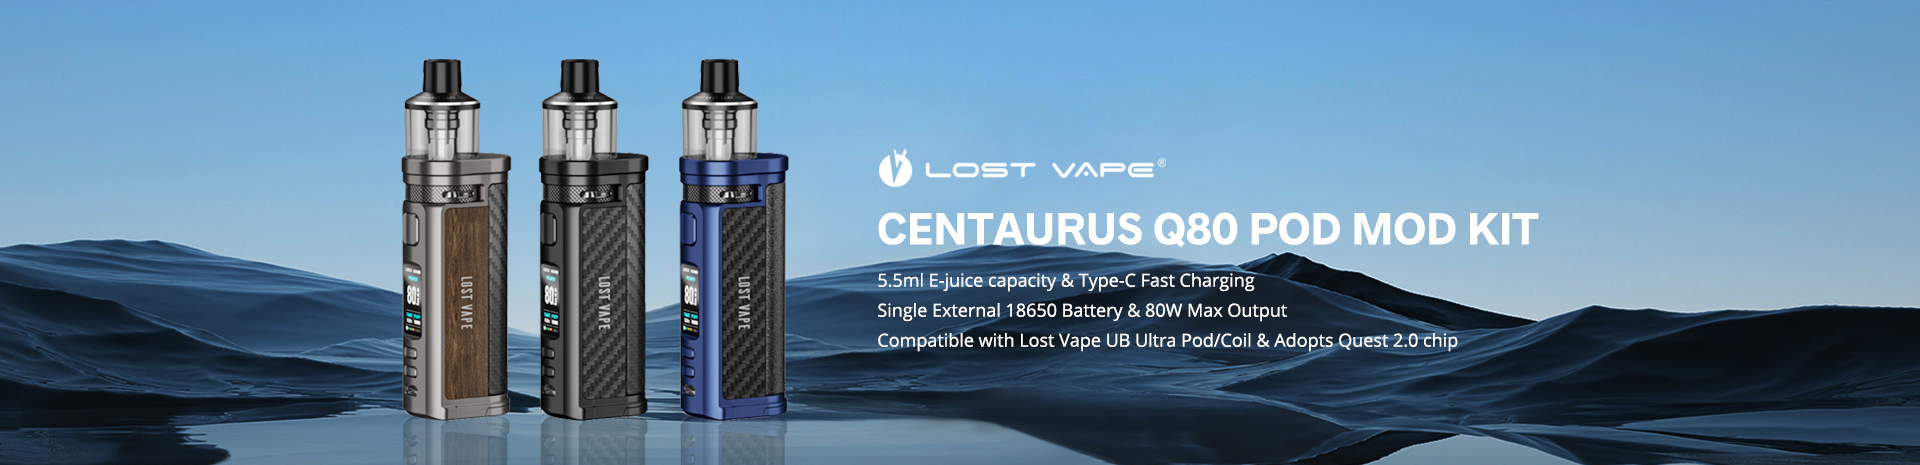 Lost Vape Centaurus Q80 Pod Mod Kit